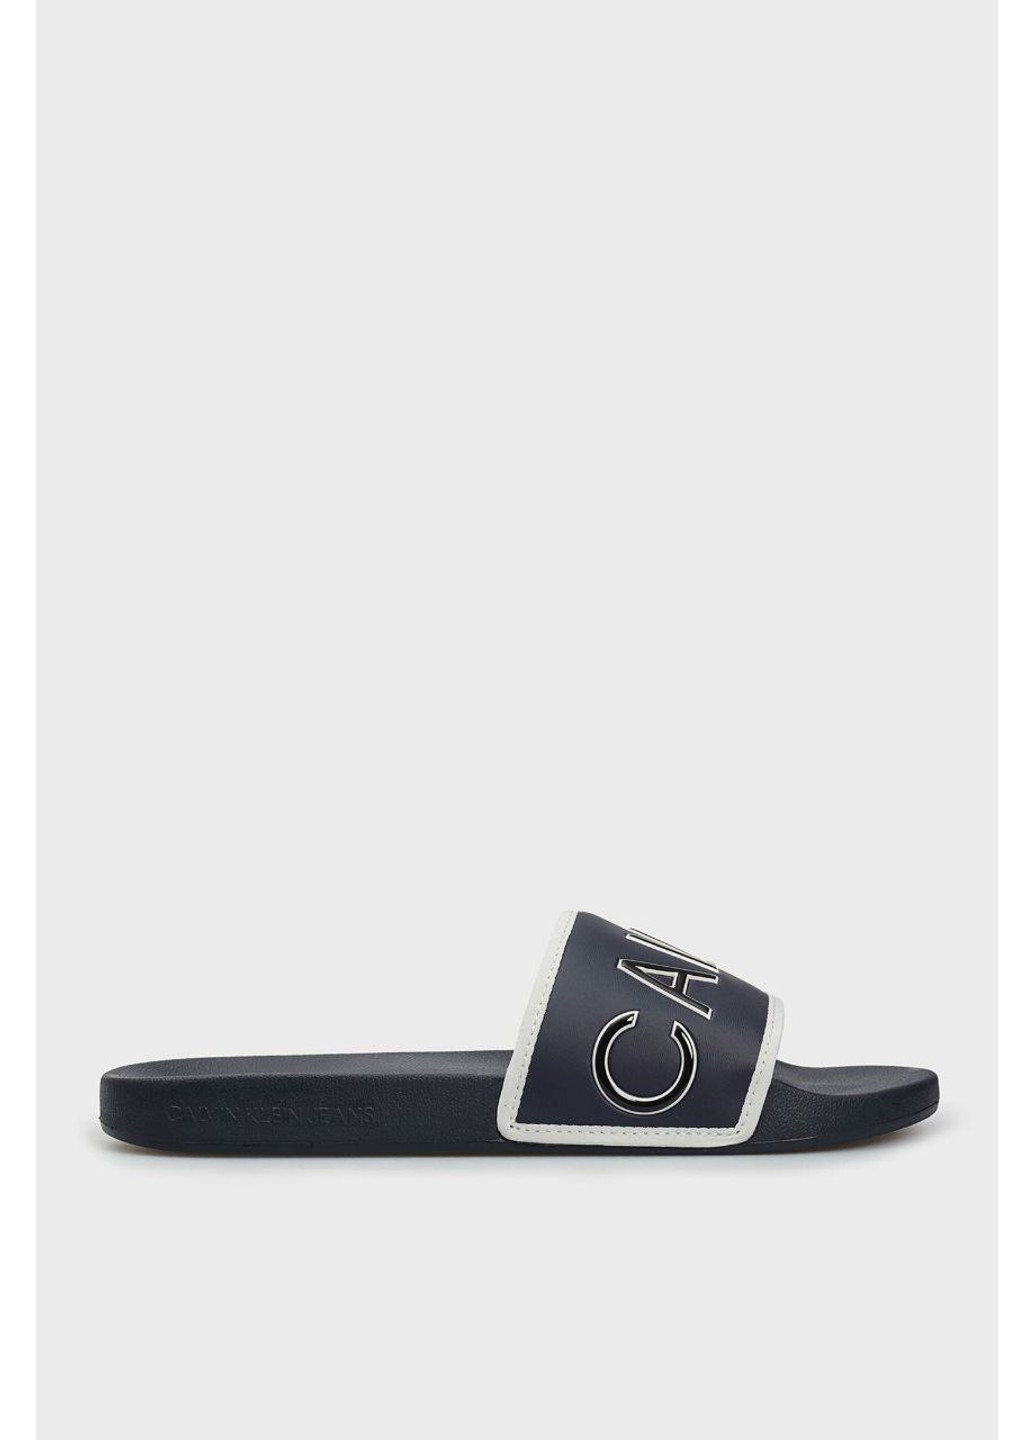 Черные тапочки Calvin Klein